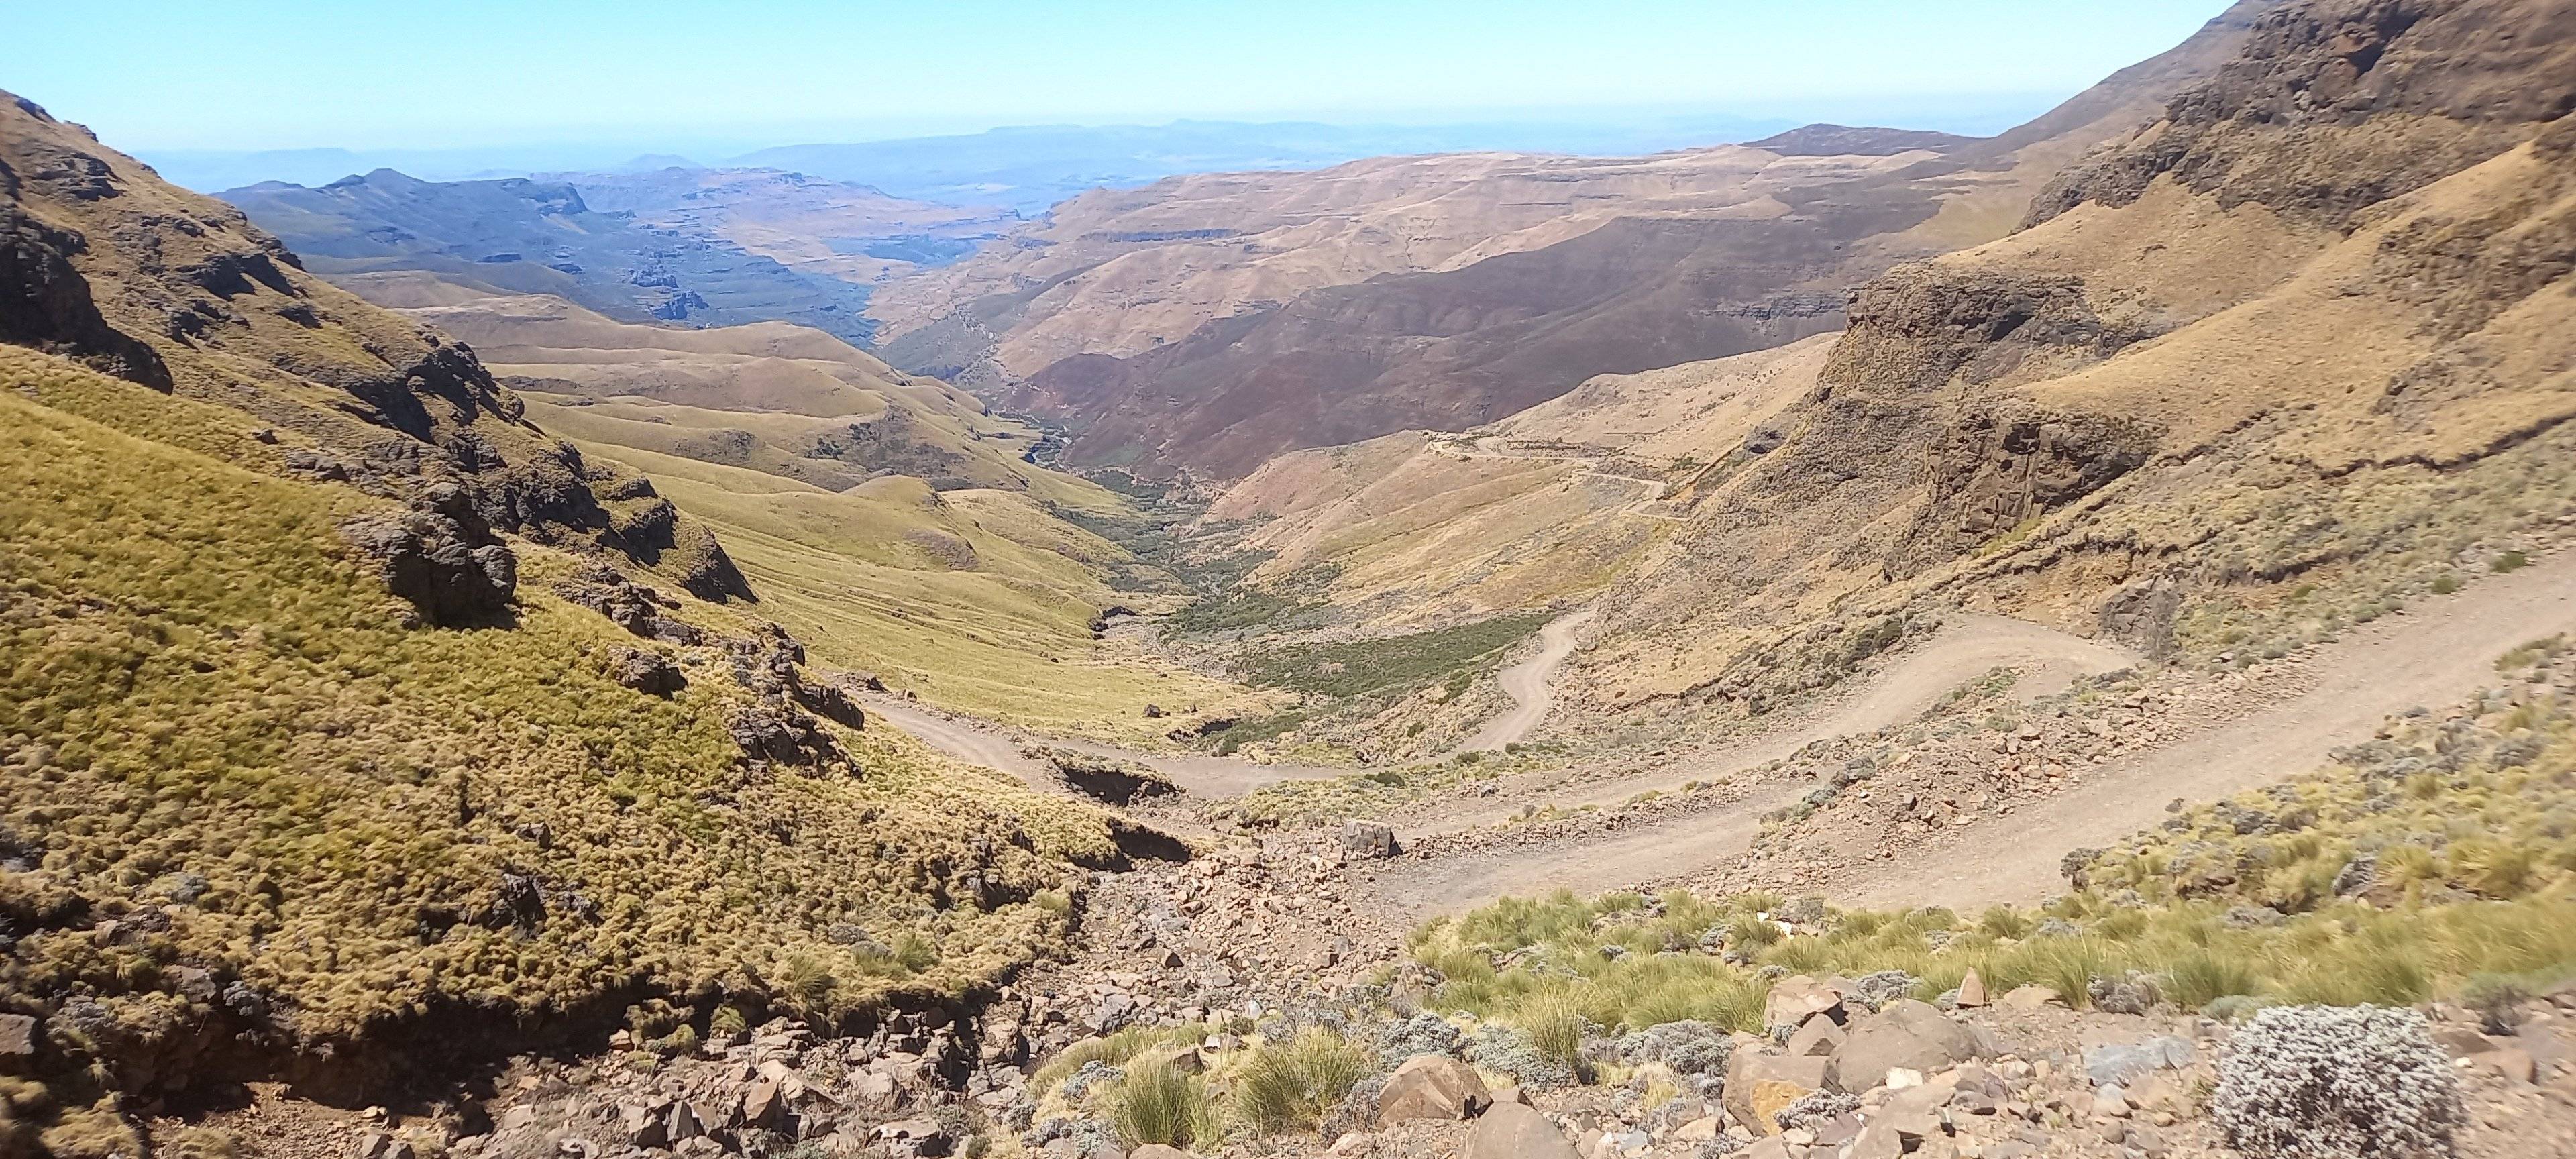 Travesía en 4x4 a Sudáfrica descendiendo el Sani Pass